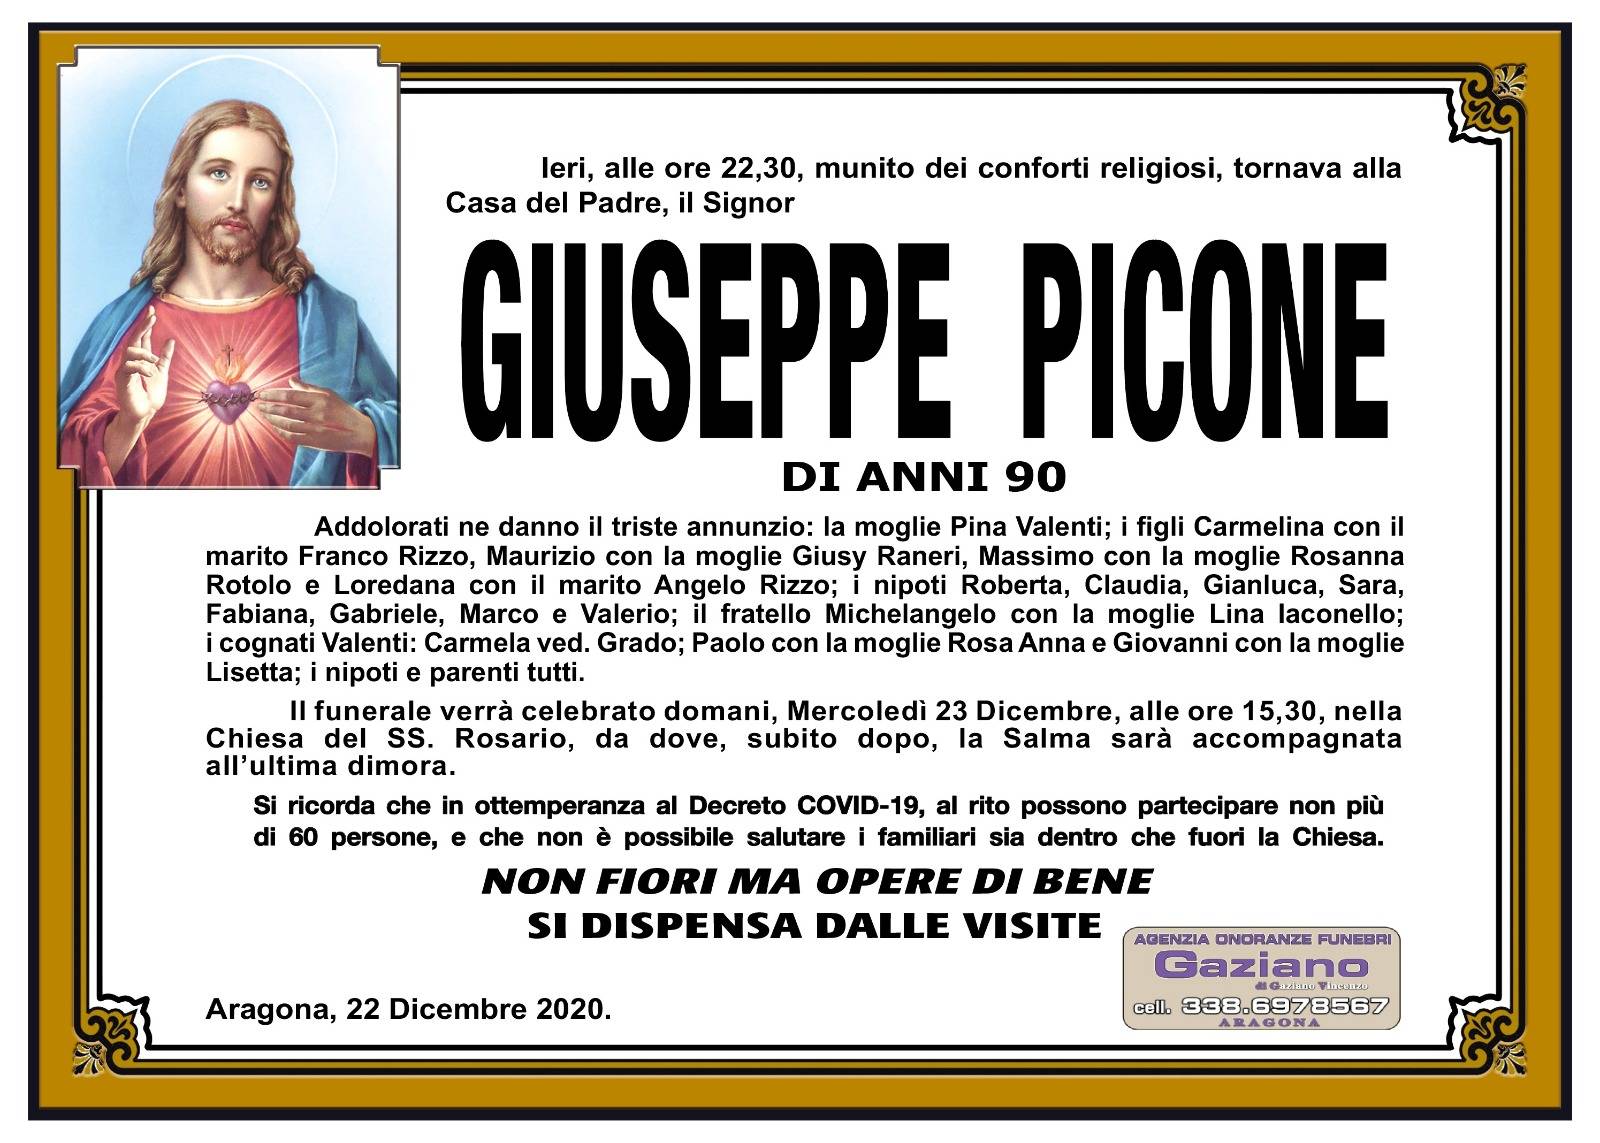 Giuseppe Picone